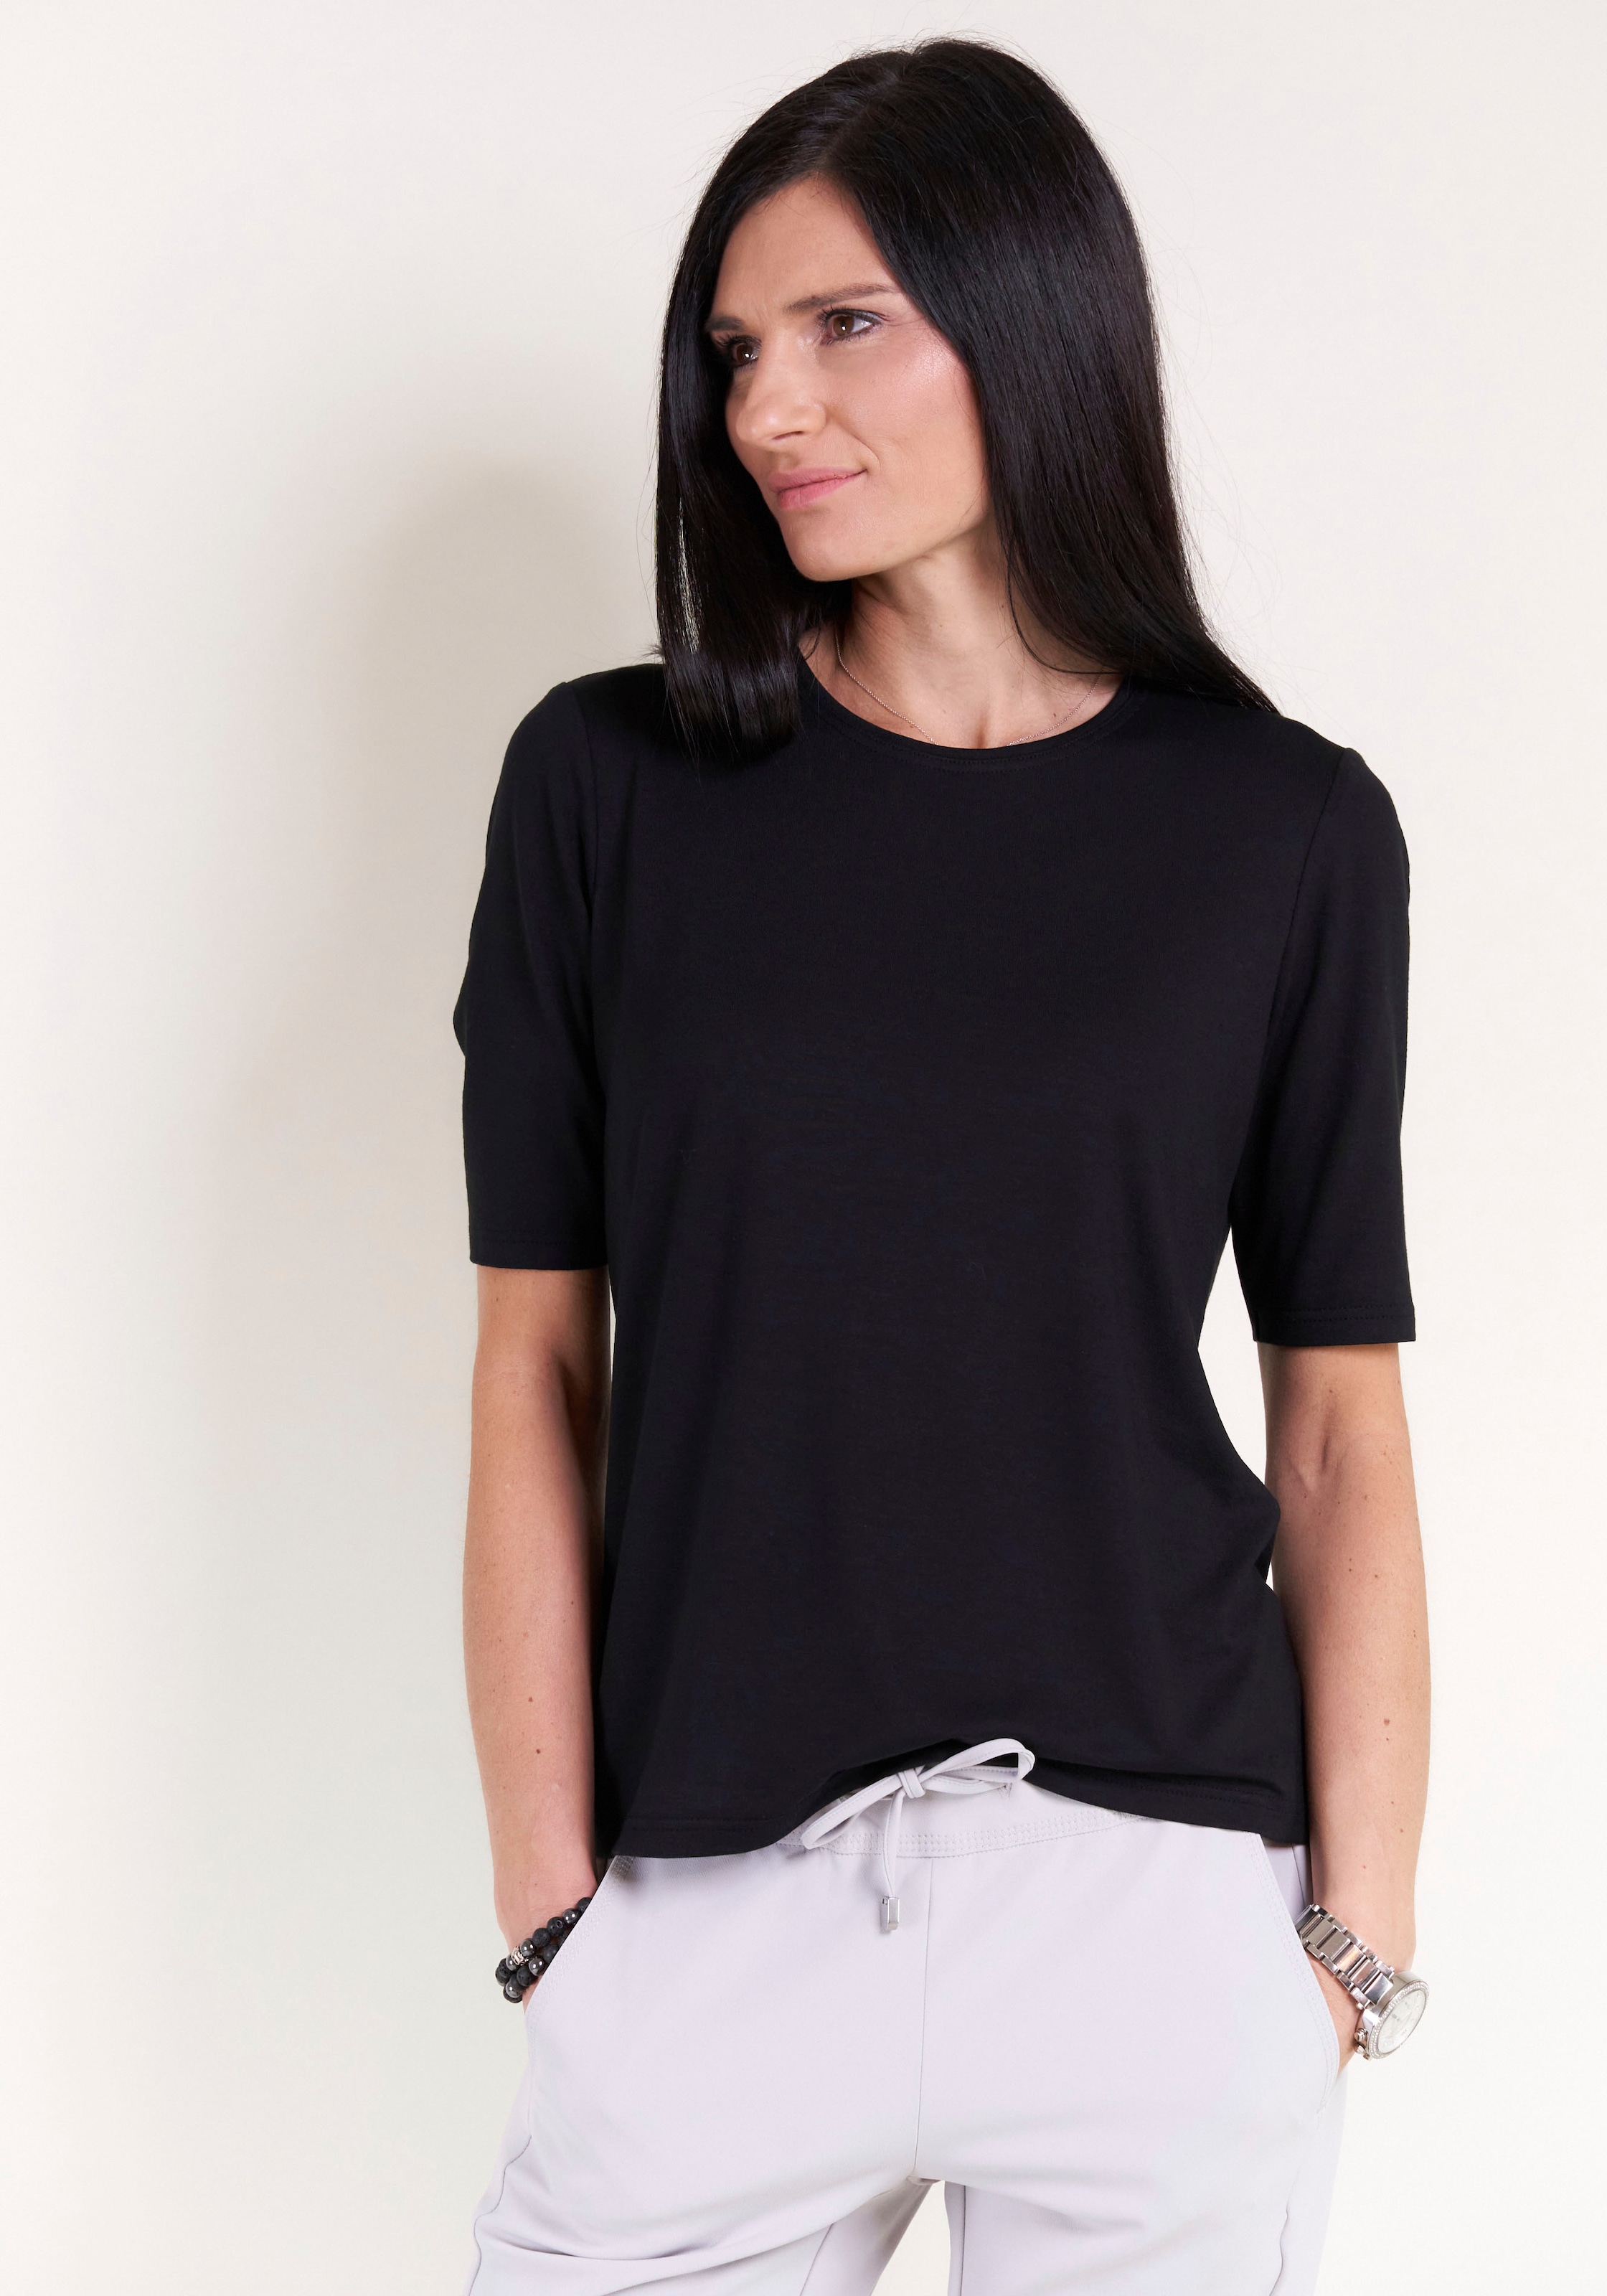 Seidel Moden T-Shirt, MADE IN GERMANY online kaufen bei Jelmoli-Versand  Schweiz